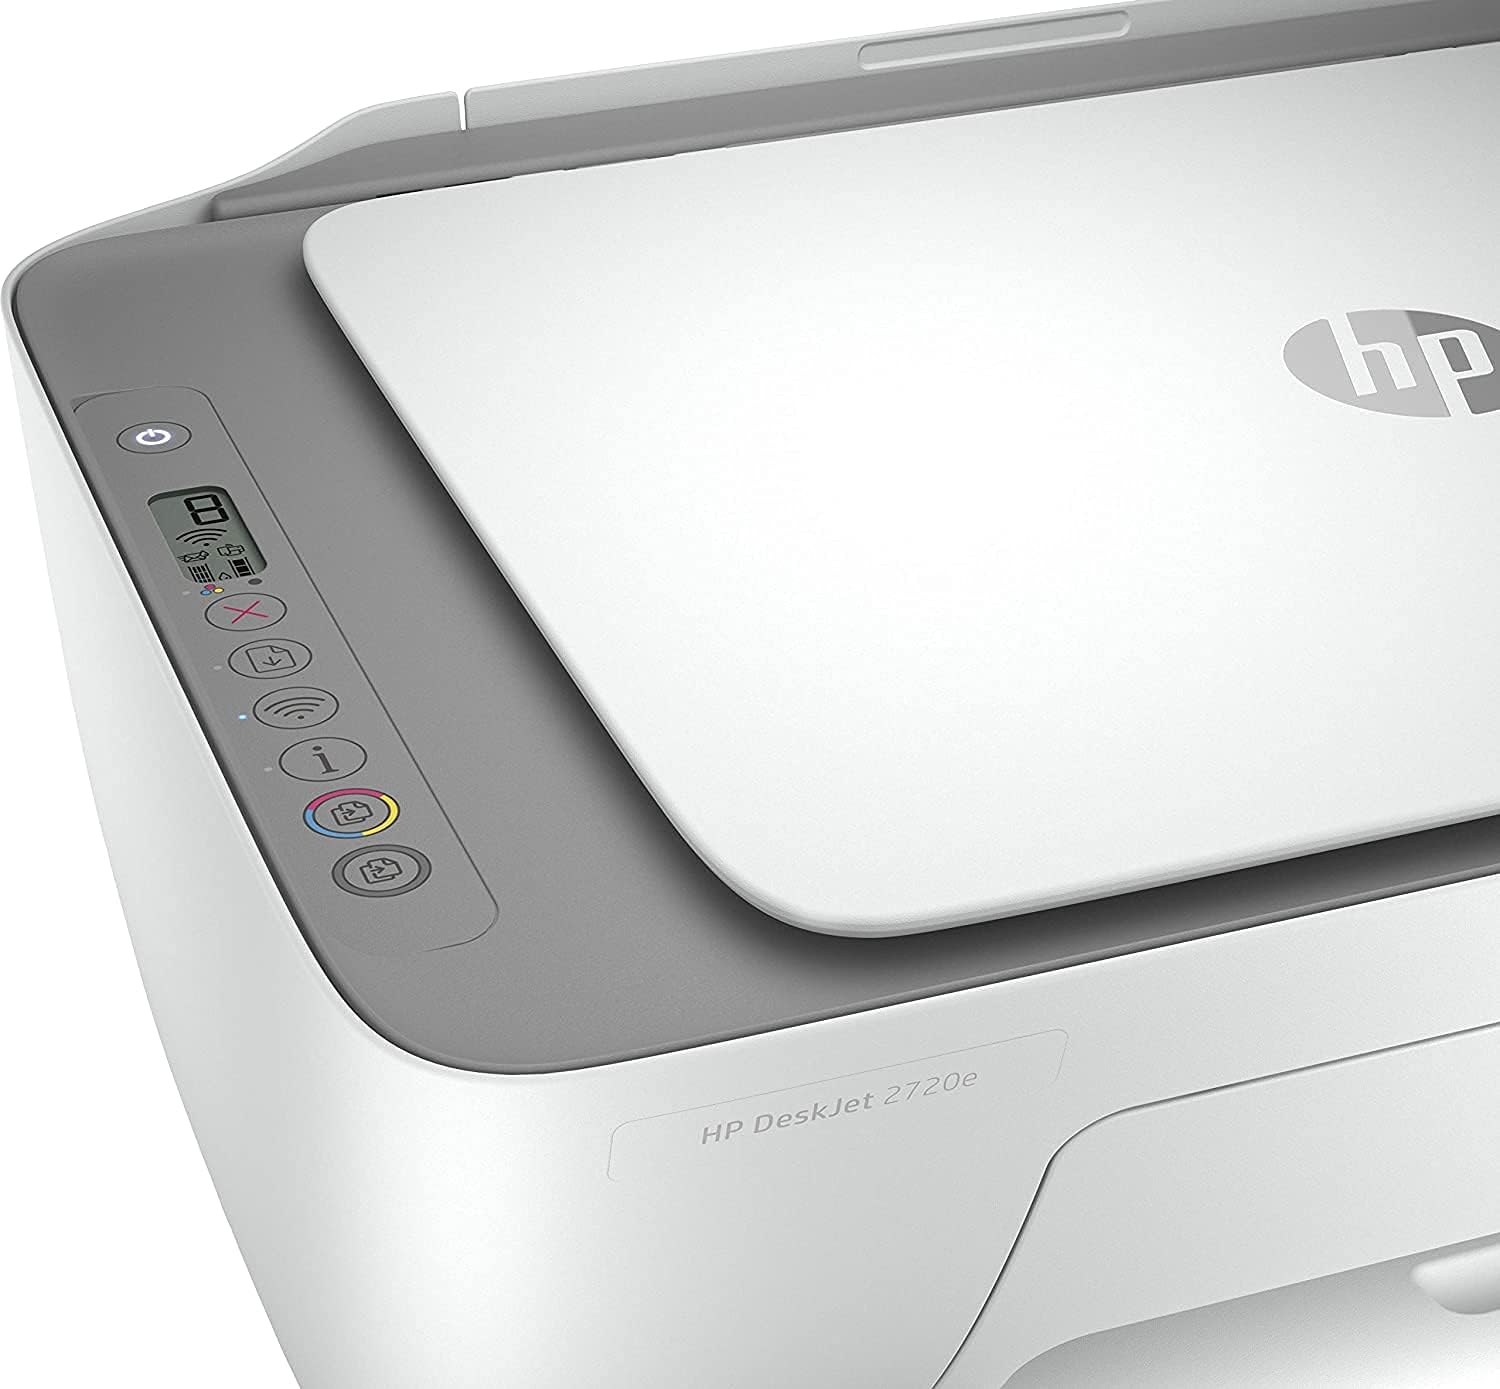 HP DeskJet 3750 All-in-One (Stone) XMO2, Draadloze Wifi kleuren inktjet printer voor thuis (Afdrukken, kopiëren, scannen) Inclusief 2 maanden Instant Ink